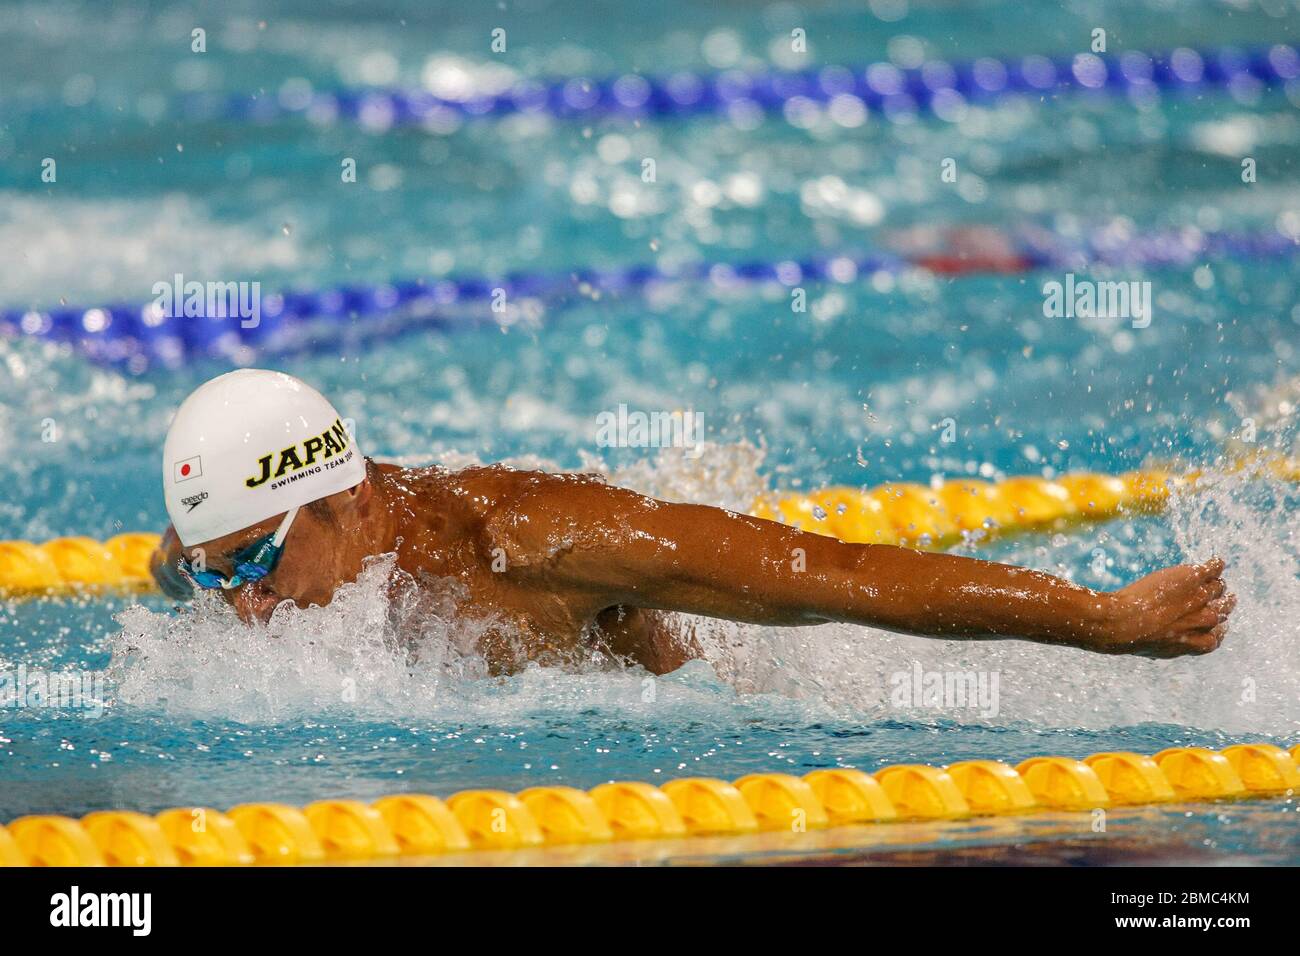 Takashi Yamamoto (JPN) im Halbfinale der Männer im Schmetterling 200 Meter bei den Olympischen Sommerspielen 2004 in Athen, Griechenland. Stockfoto